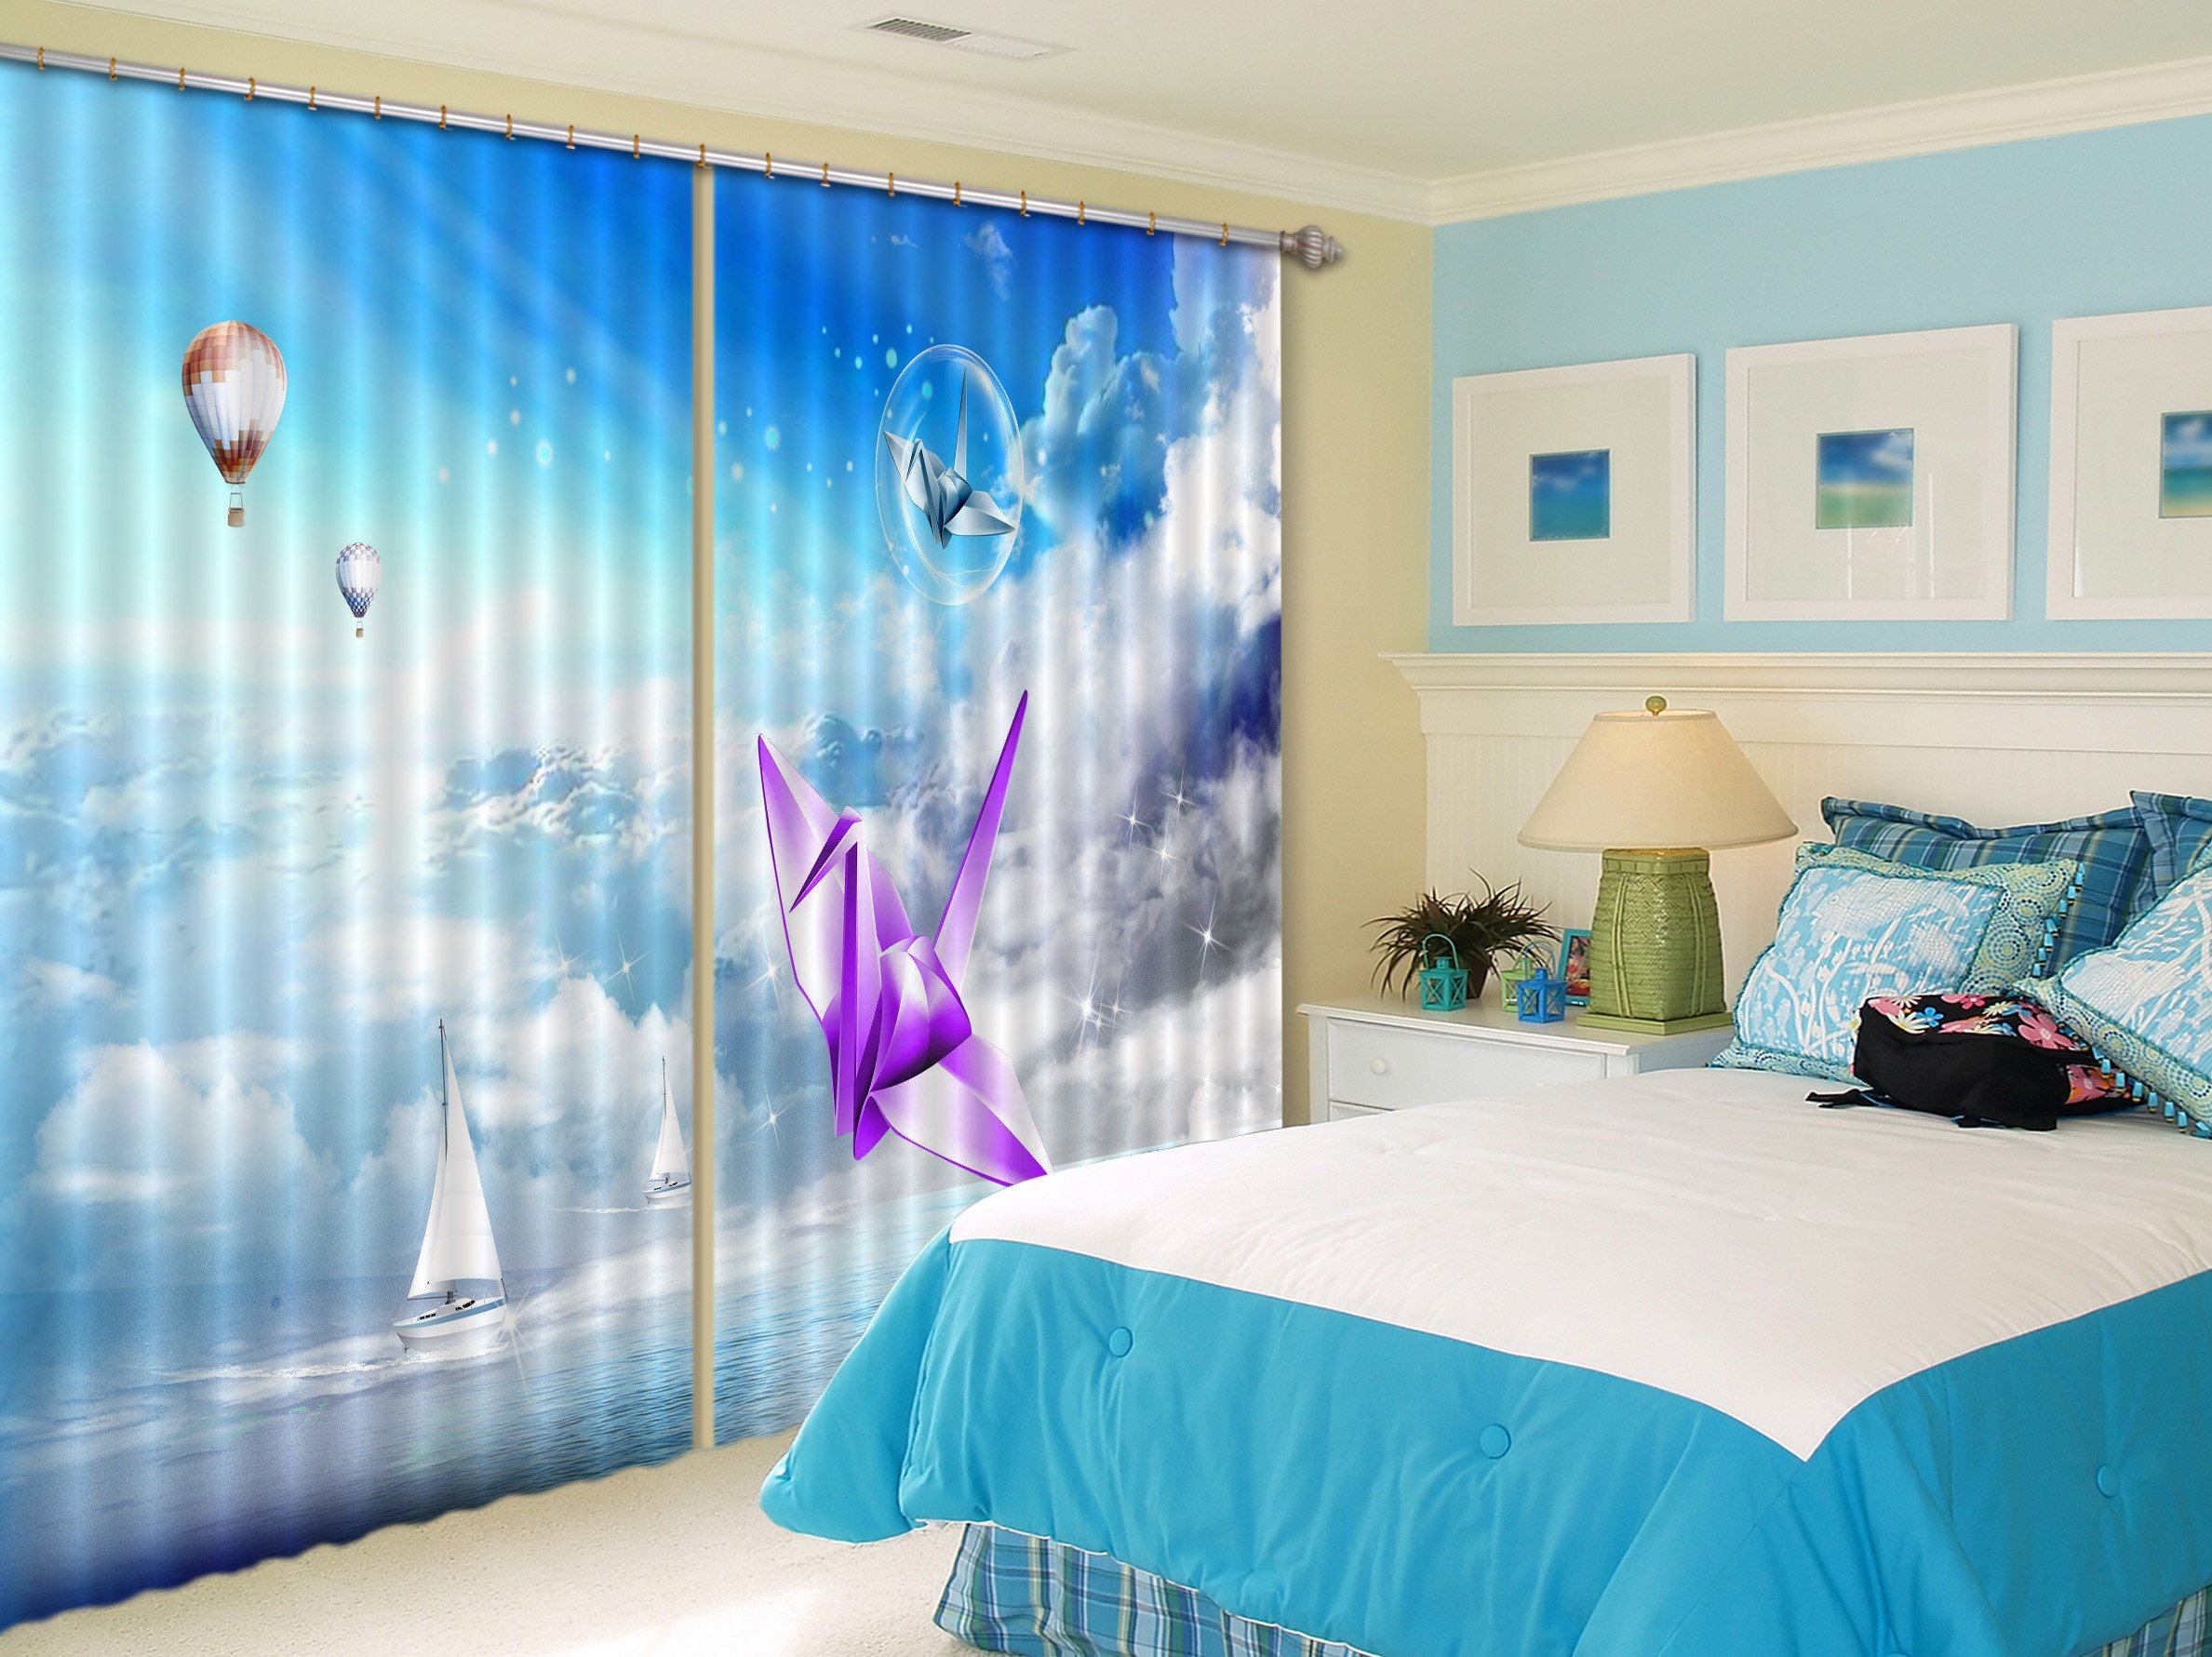 3D Sea Paper Birds 239 Curtains Drapes Wallpaper AJ Wallpaper 